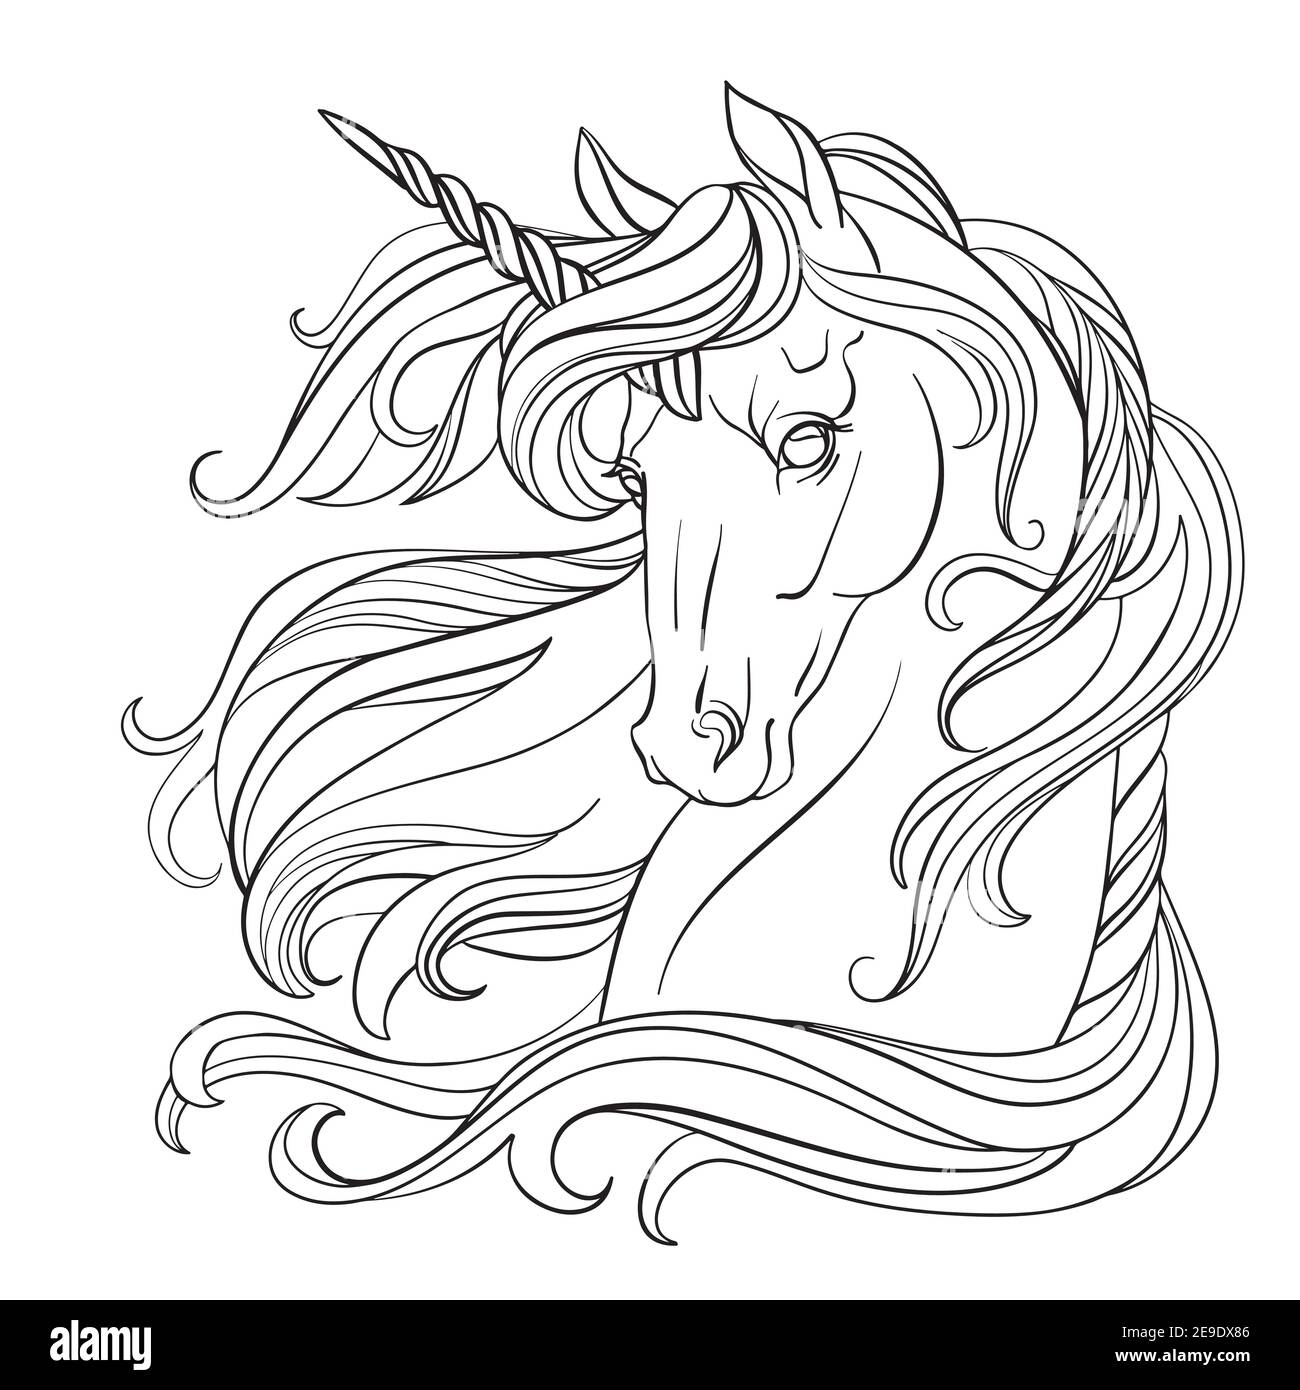 Testa di unicorno con una mane lunga. Immagine vettoriale in bianco e nero per colorare la pagina. Per la progettazione di stampe, poster, cartoline, libri da colorare, Illustrazione Vettoriale